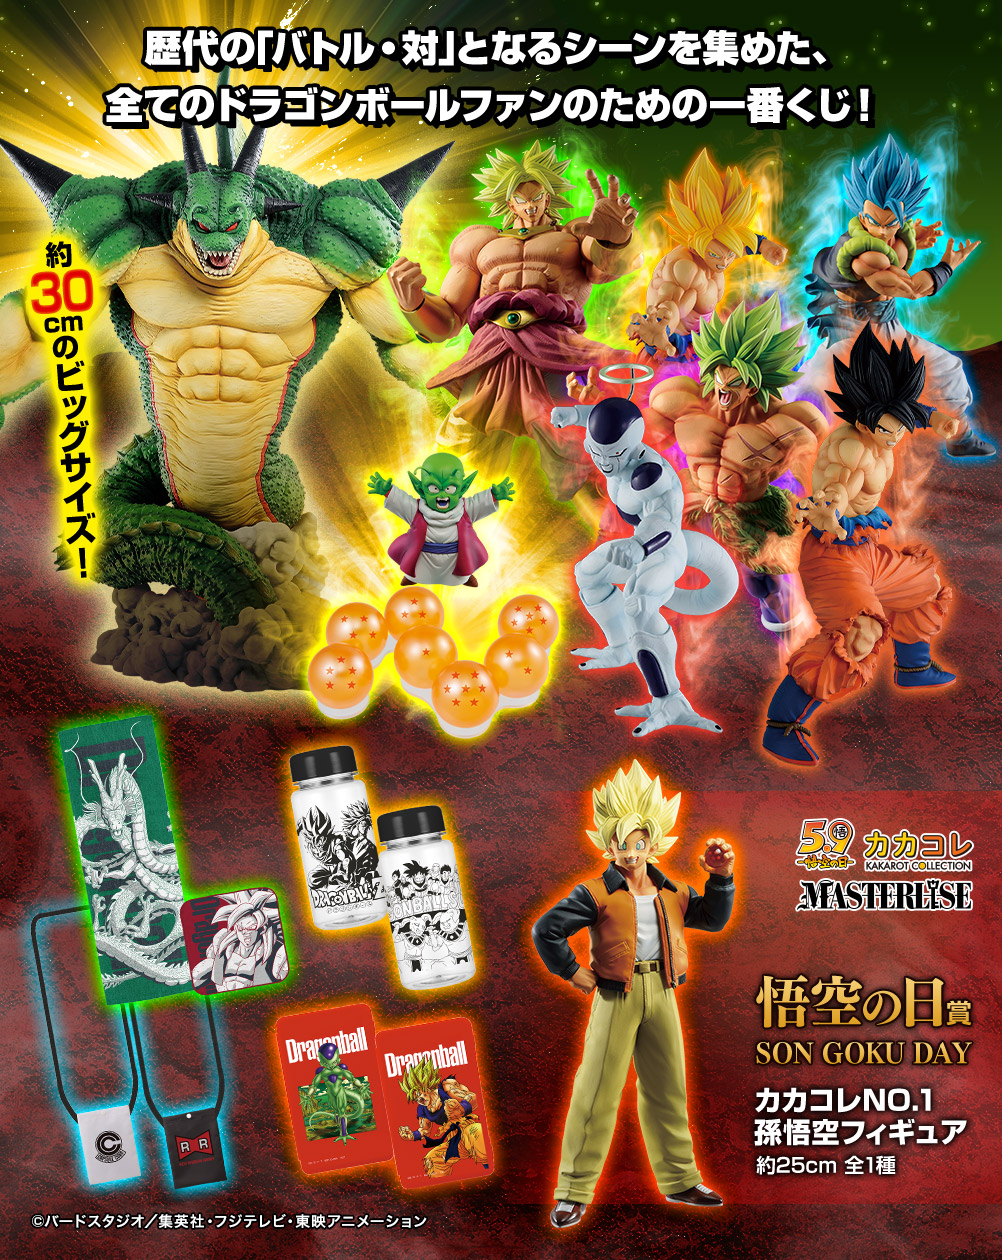 Ichiban Kuji Dragon Ball Vs Omnibus Z Dbz Figures Com